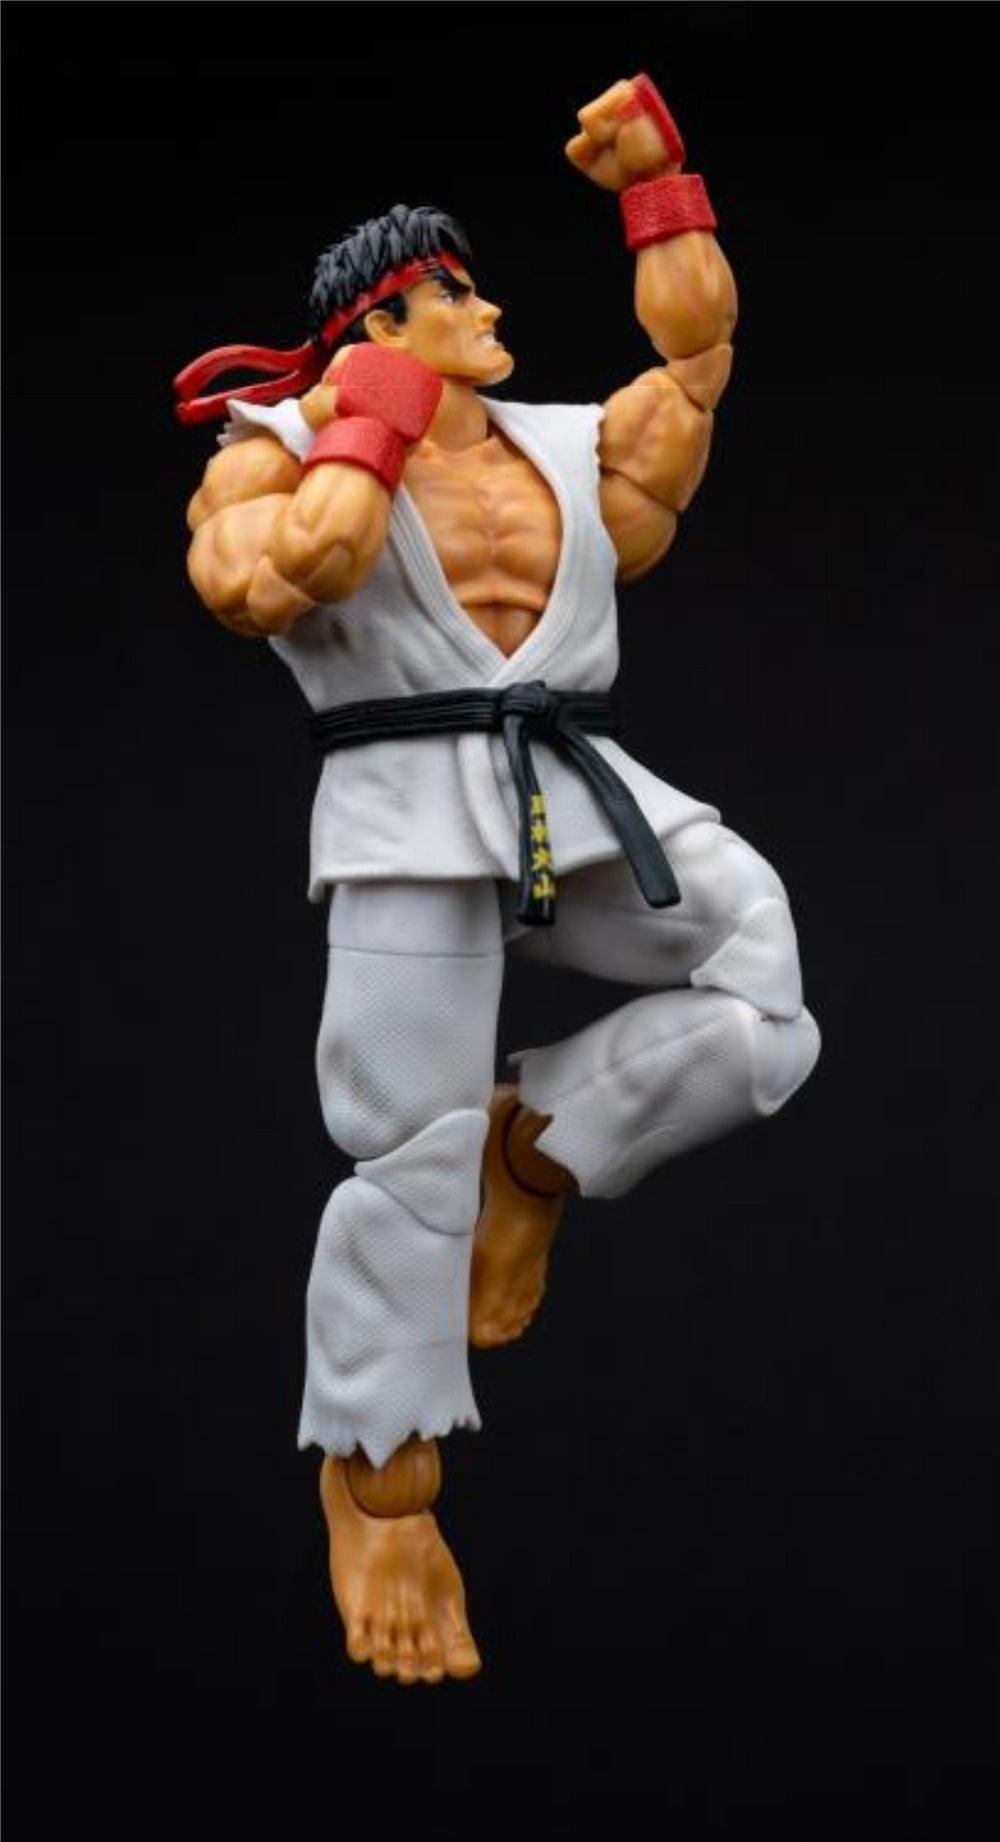 Jada - 1:12 Ryu Action Figure